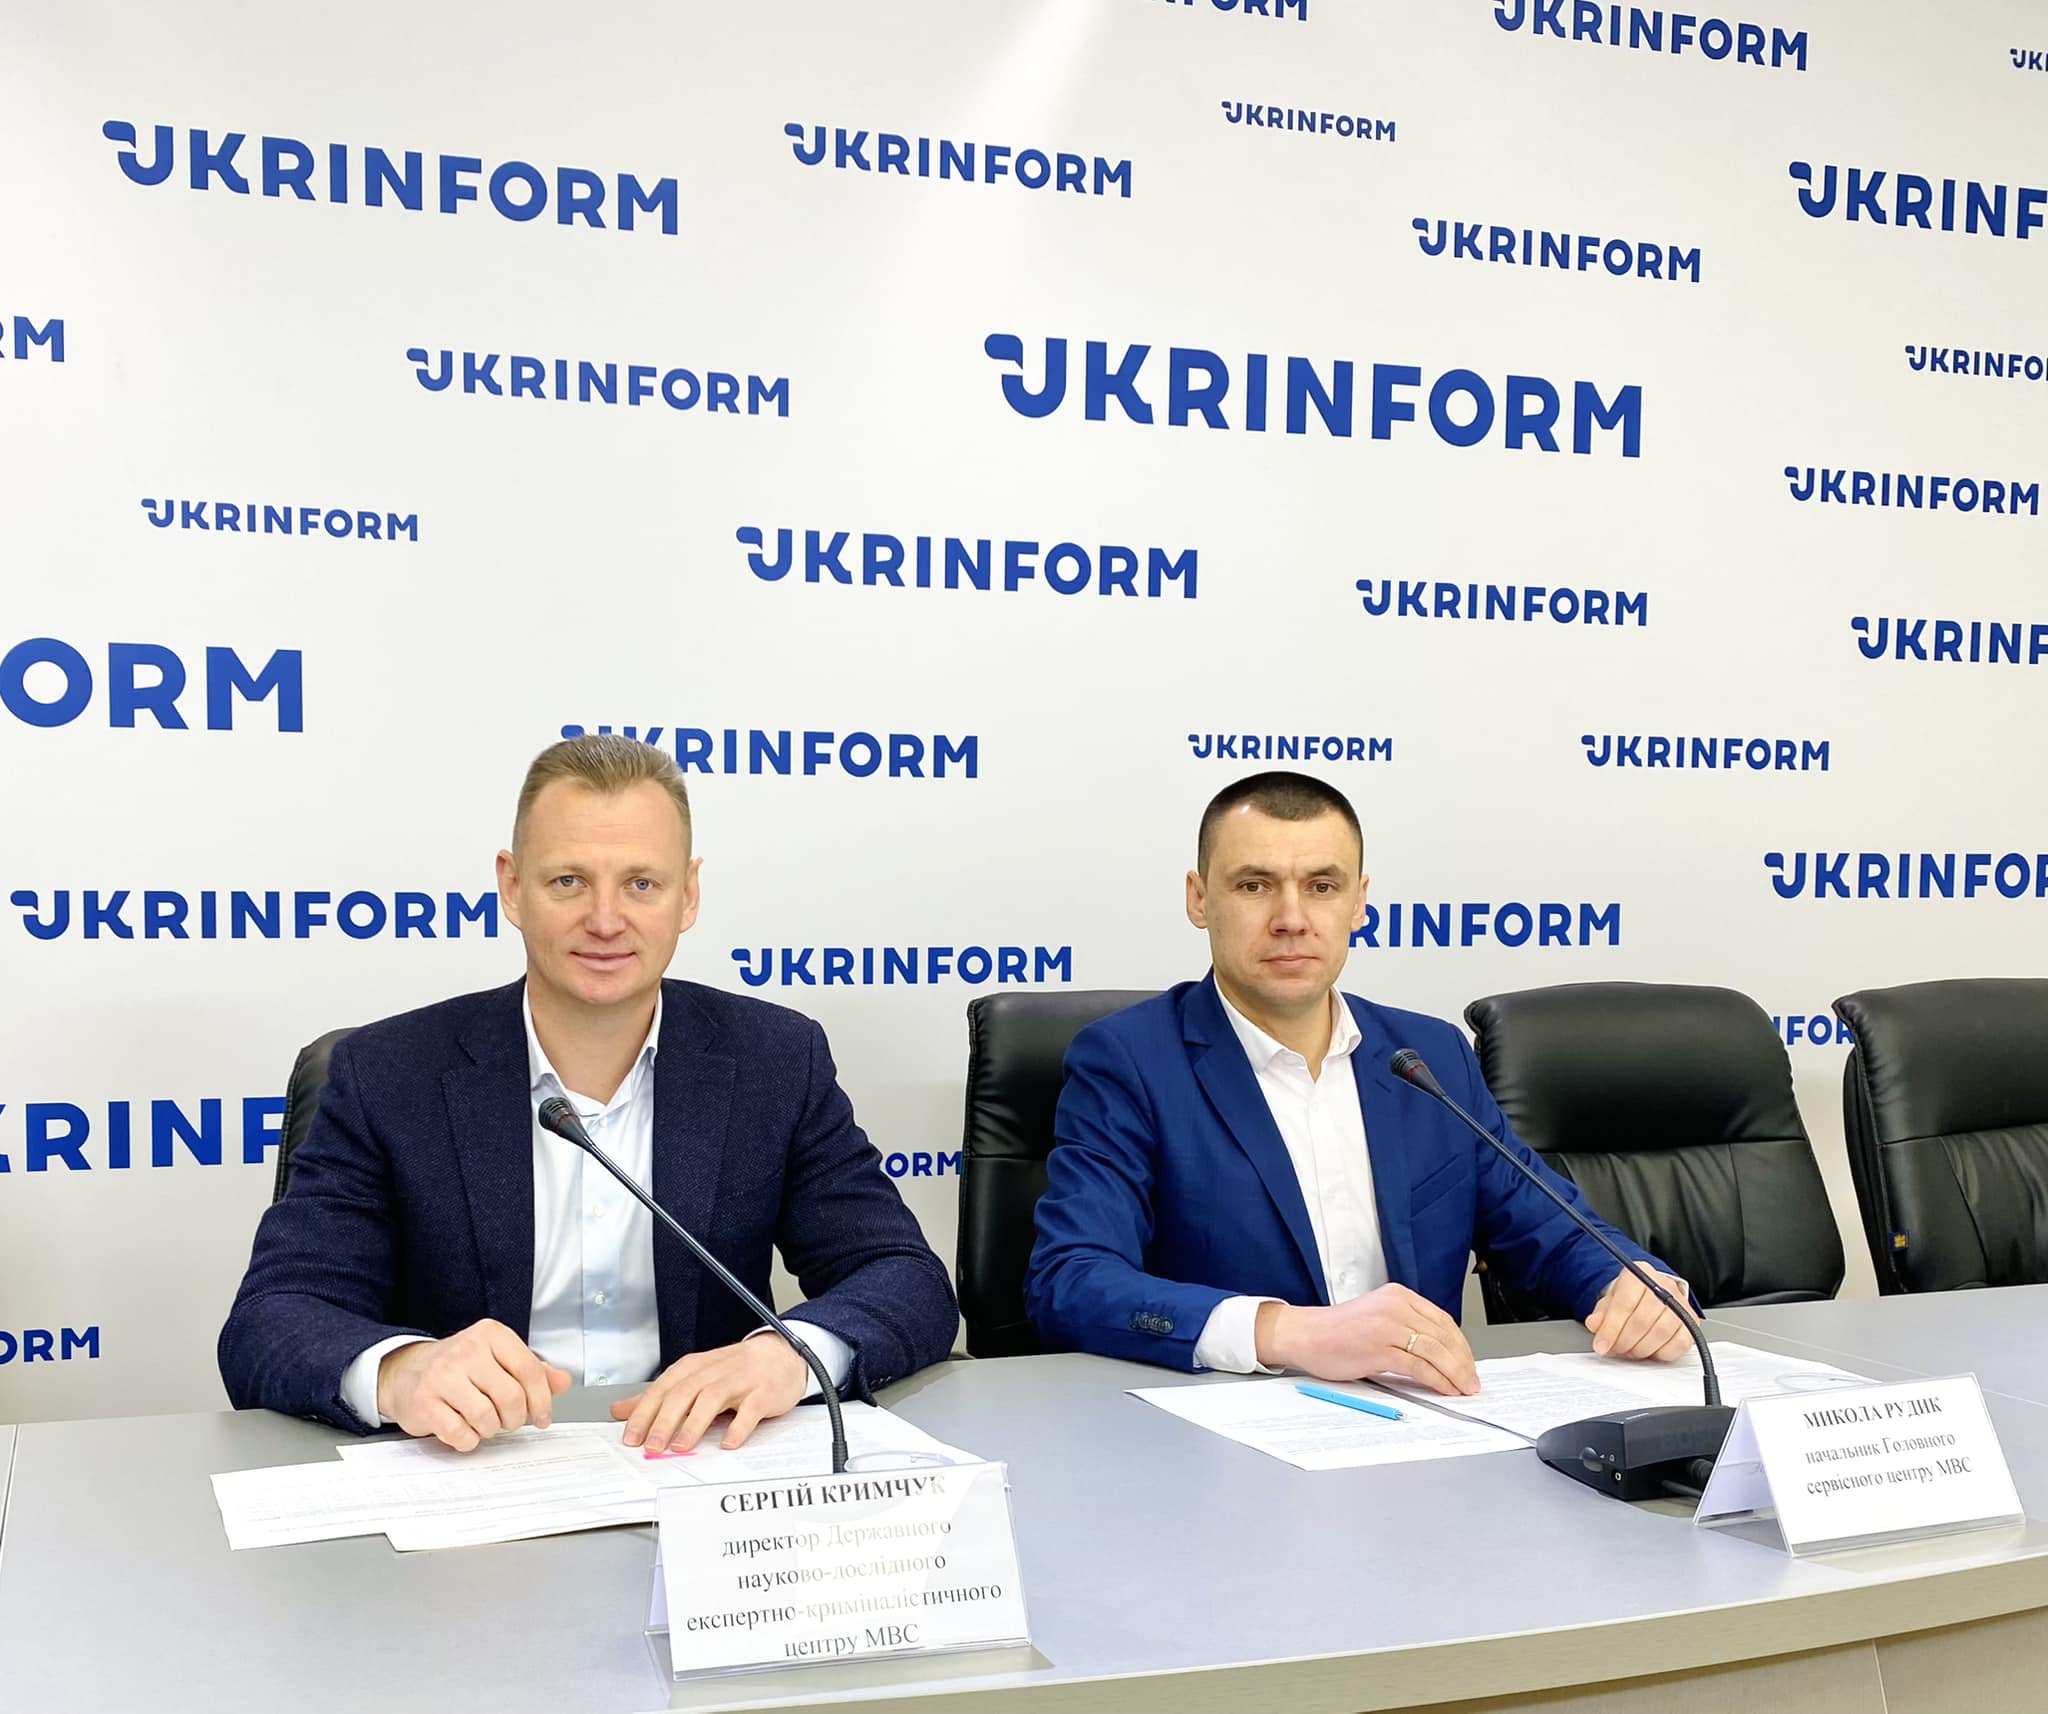 Від 14 грудня в Україні змінюється алгоритм реєстрації та перереєстрації транспортних засобів